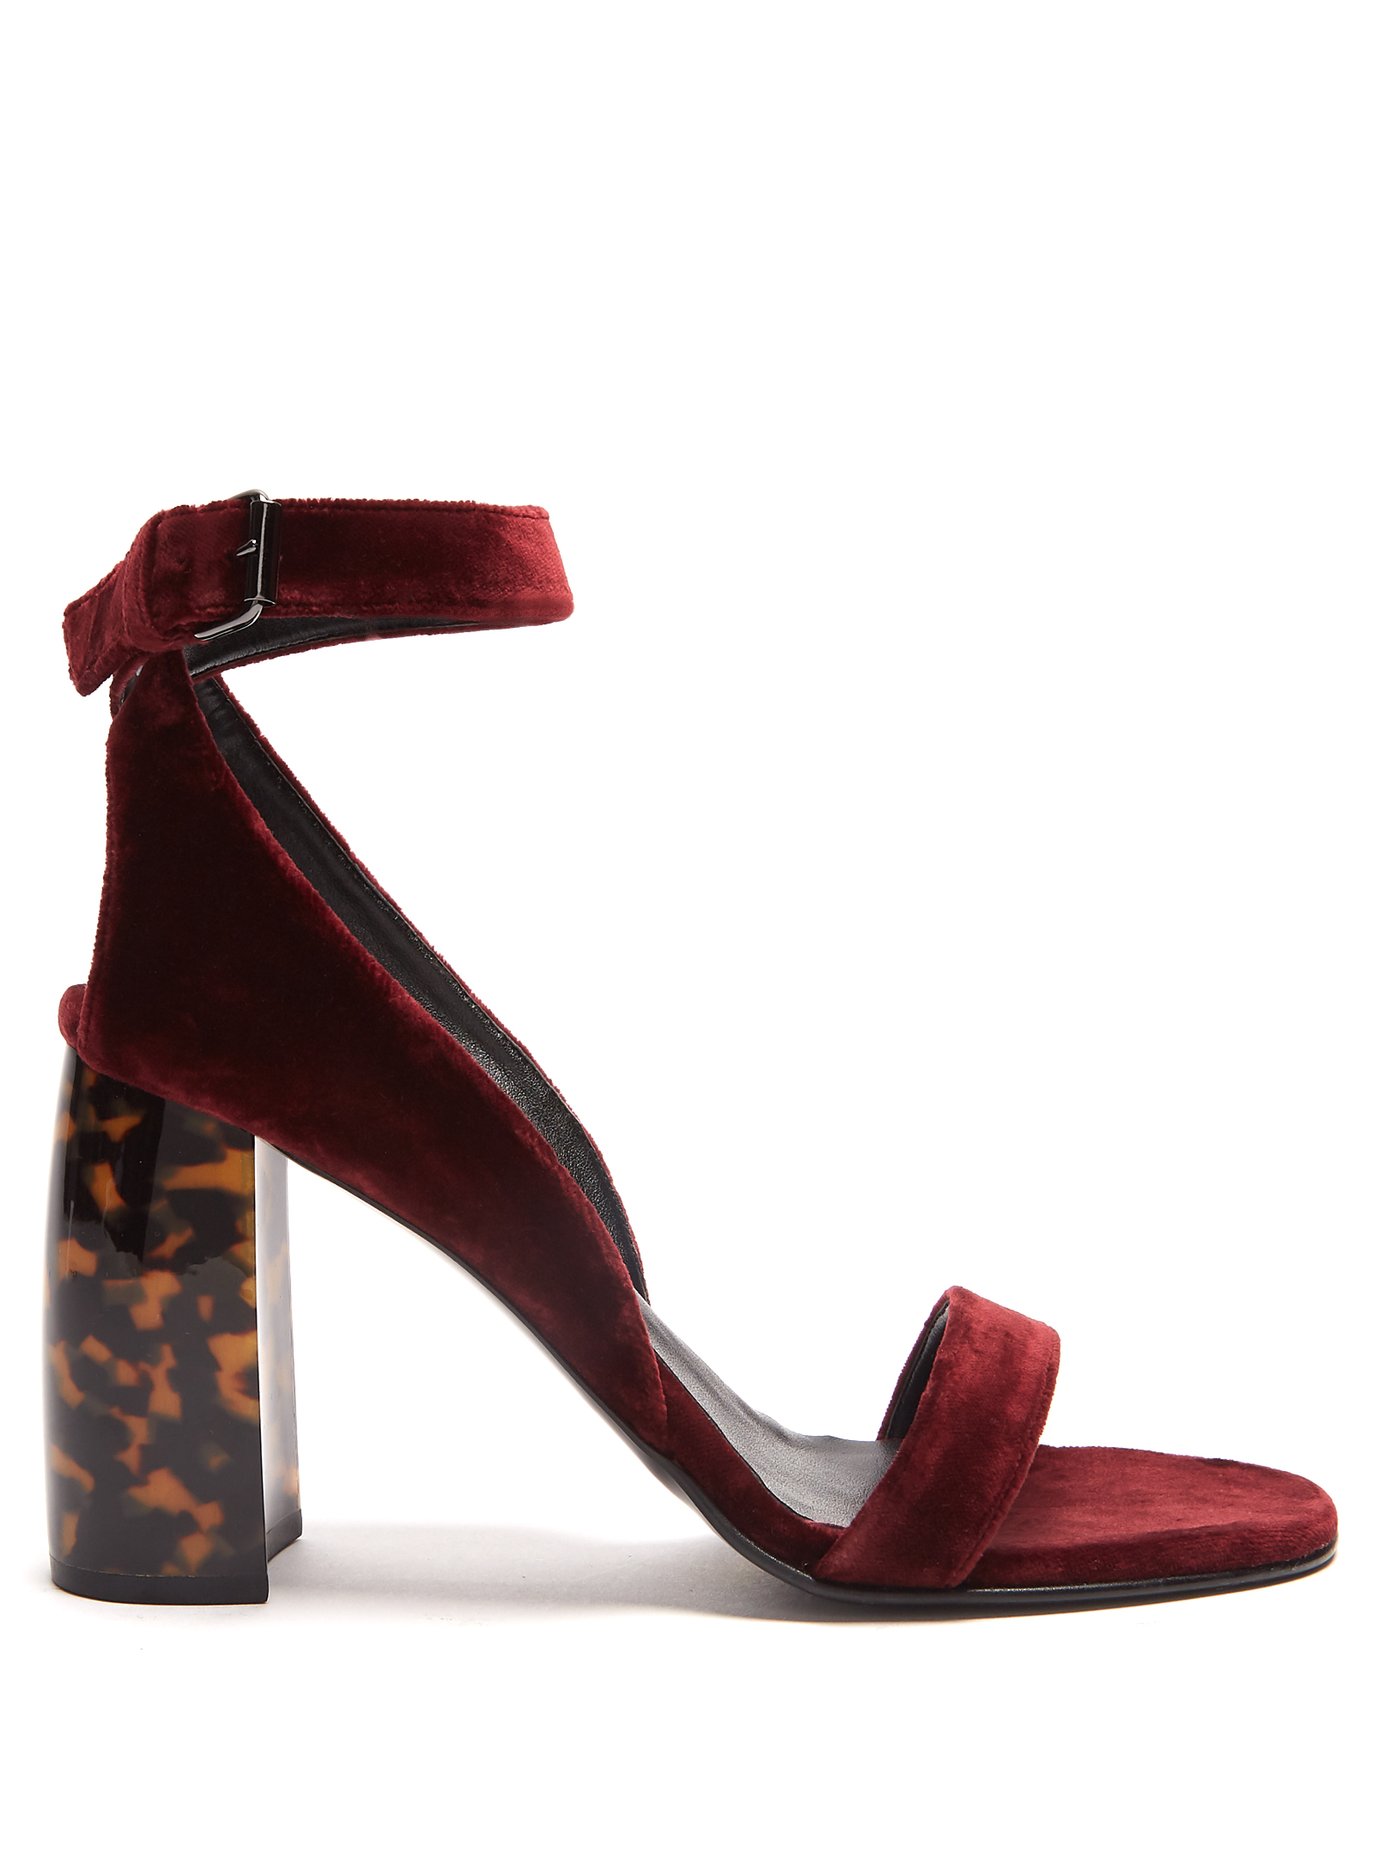 burgundy block heels uk